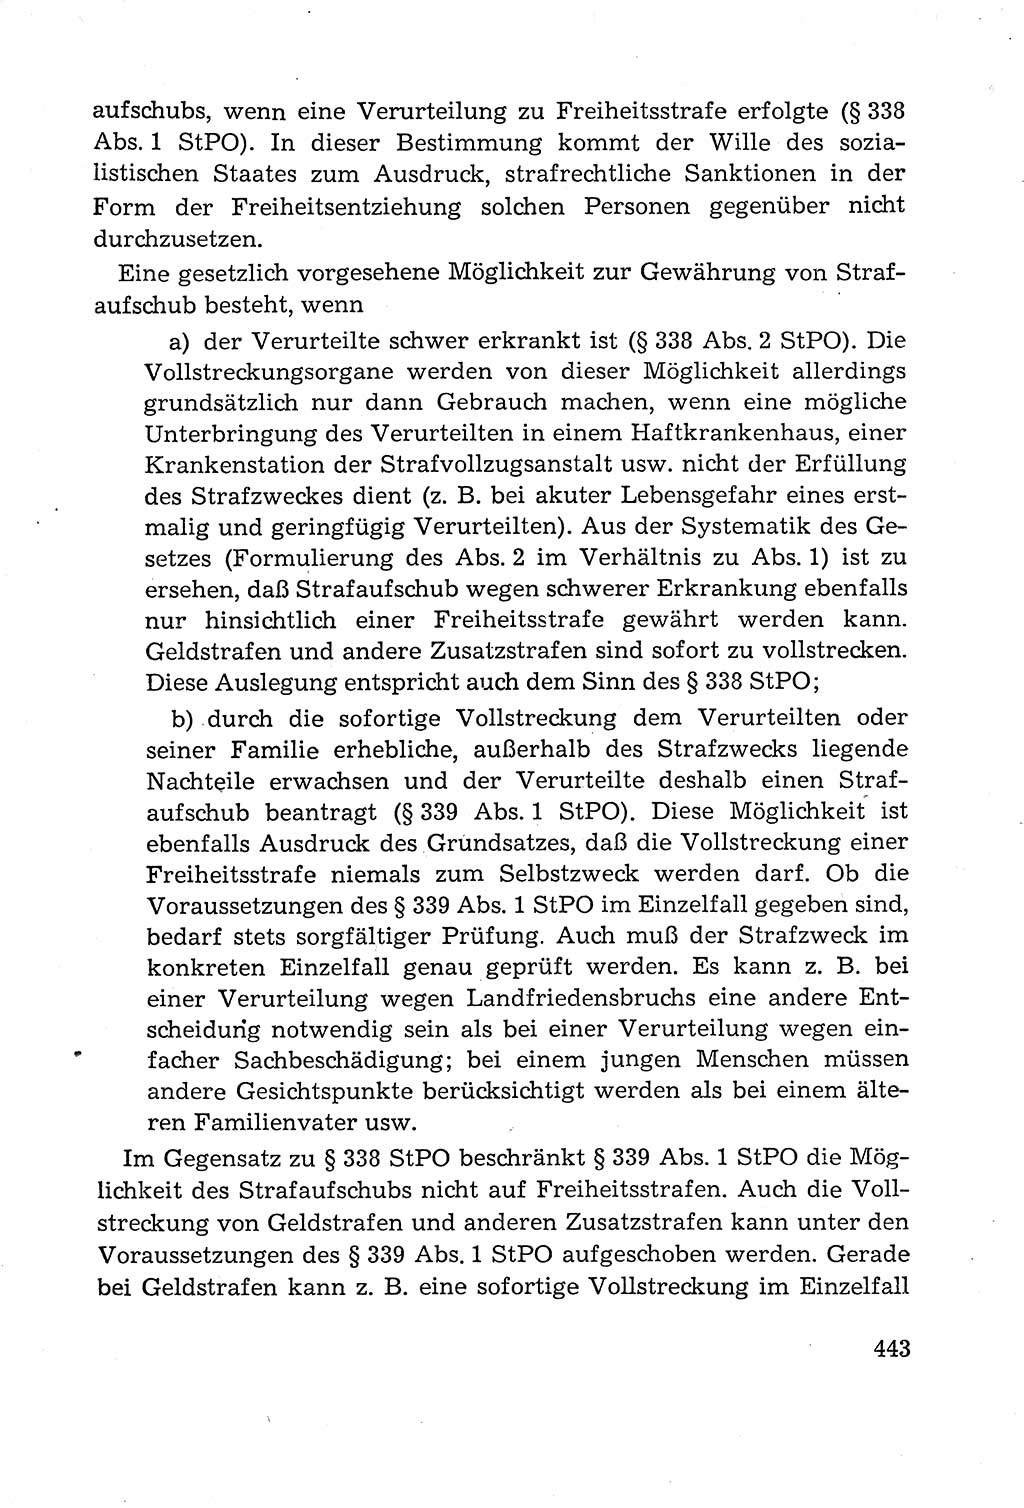 Leitfaden des Strafprozeßrechts der Deutschen Demokratischen Republik (DDR) 1959, Seite 443 (LF StPR DDR 1959, S. 443)